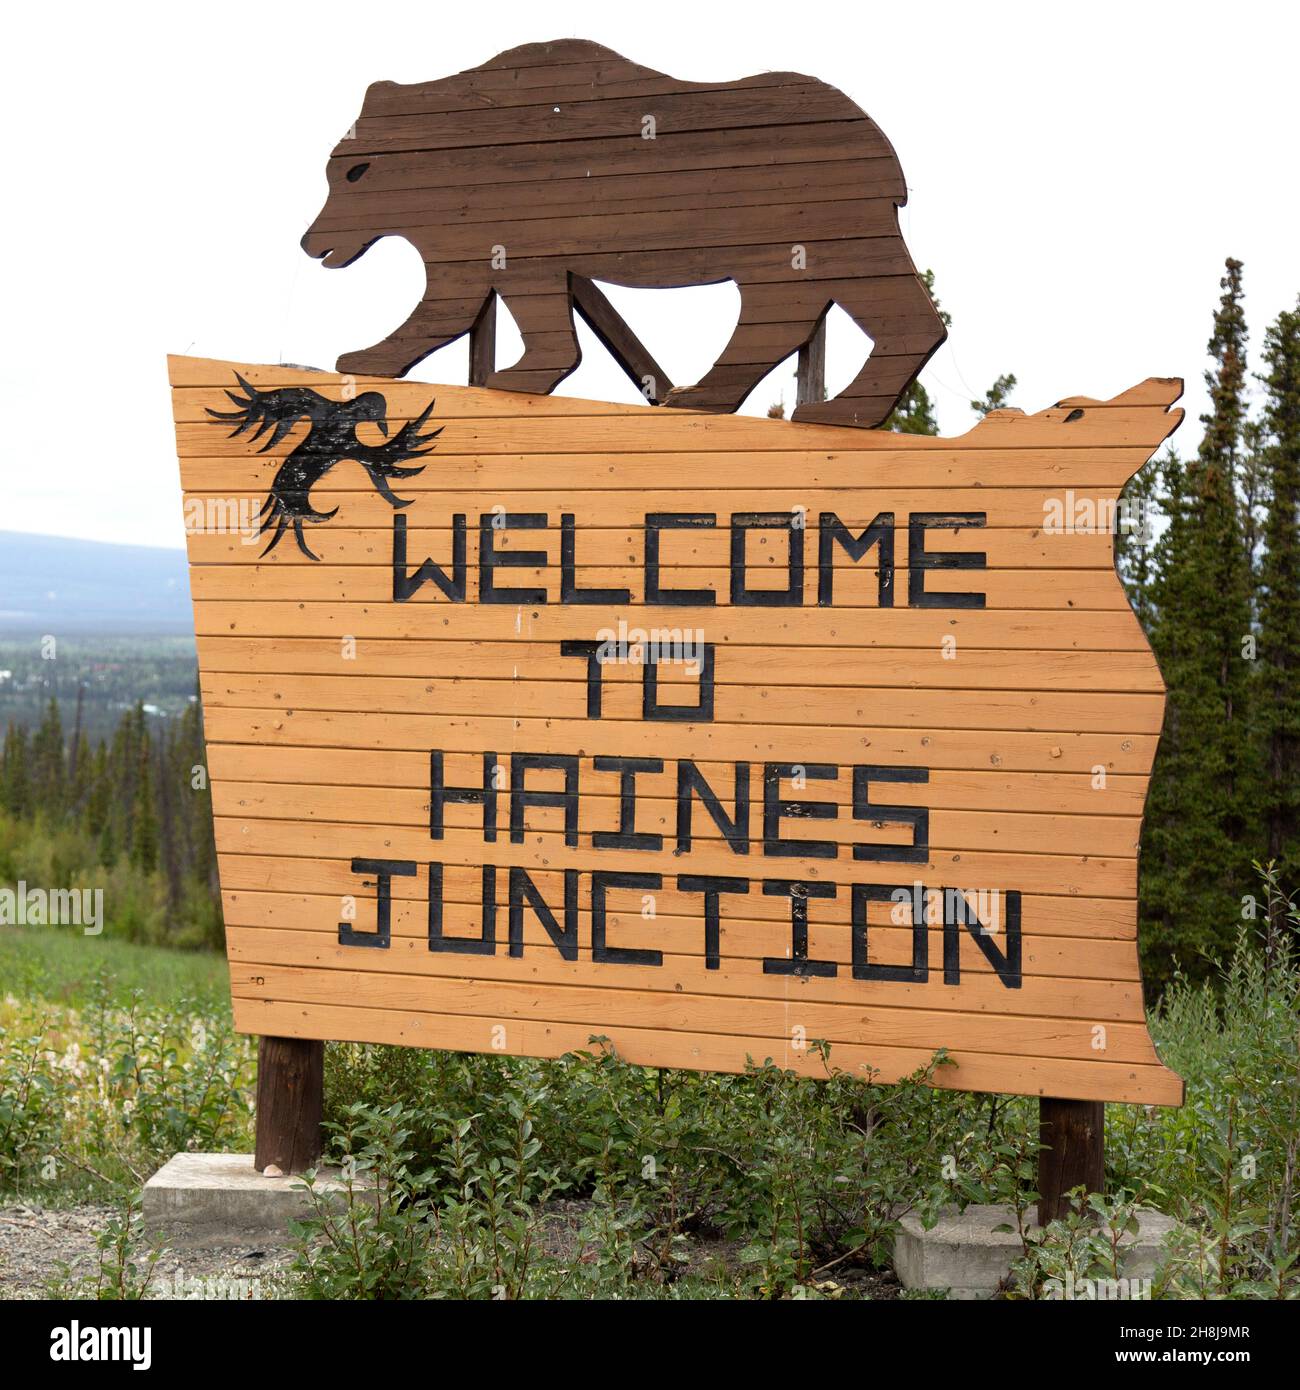 Schild für Haines Junction im Südwesten des Yukon, Kanada. Das Holzschild zeigt eine Figur, die einen Grizzlybären darstellt. Stockfoto